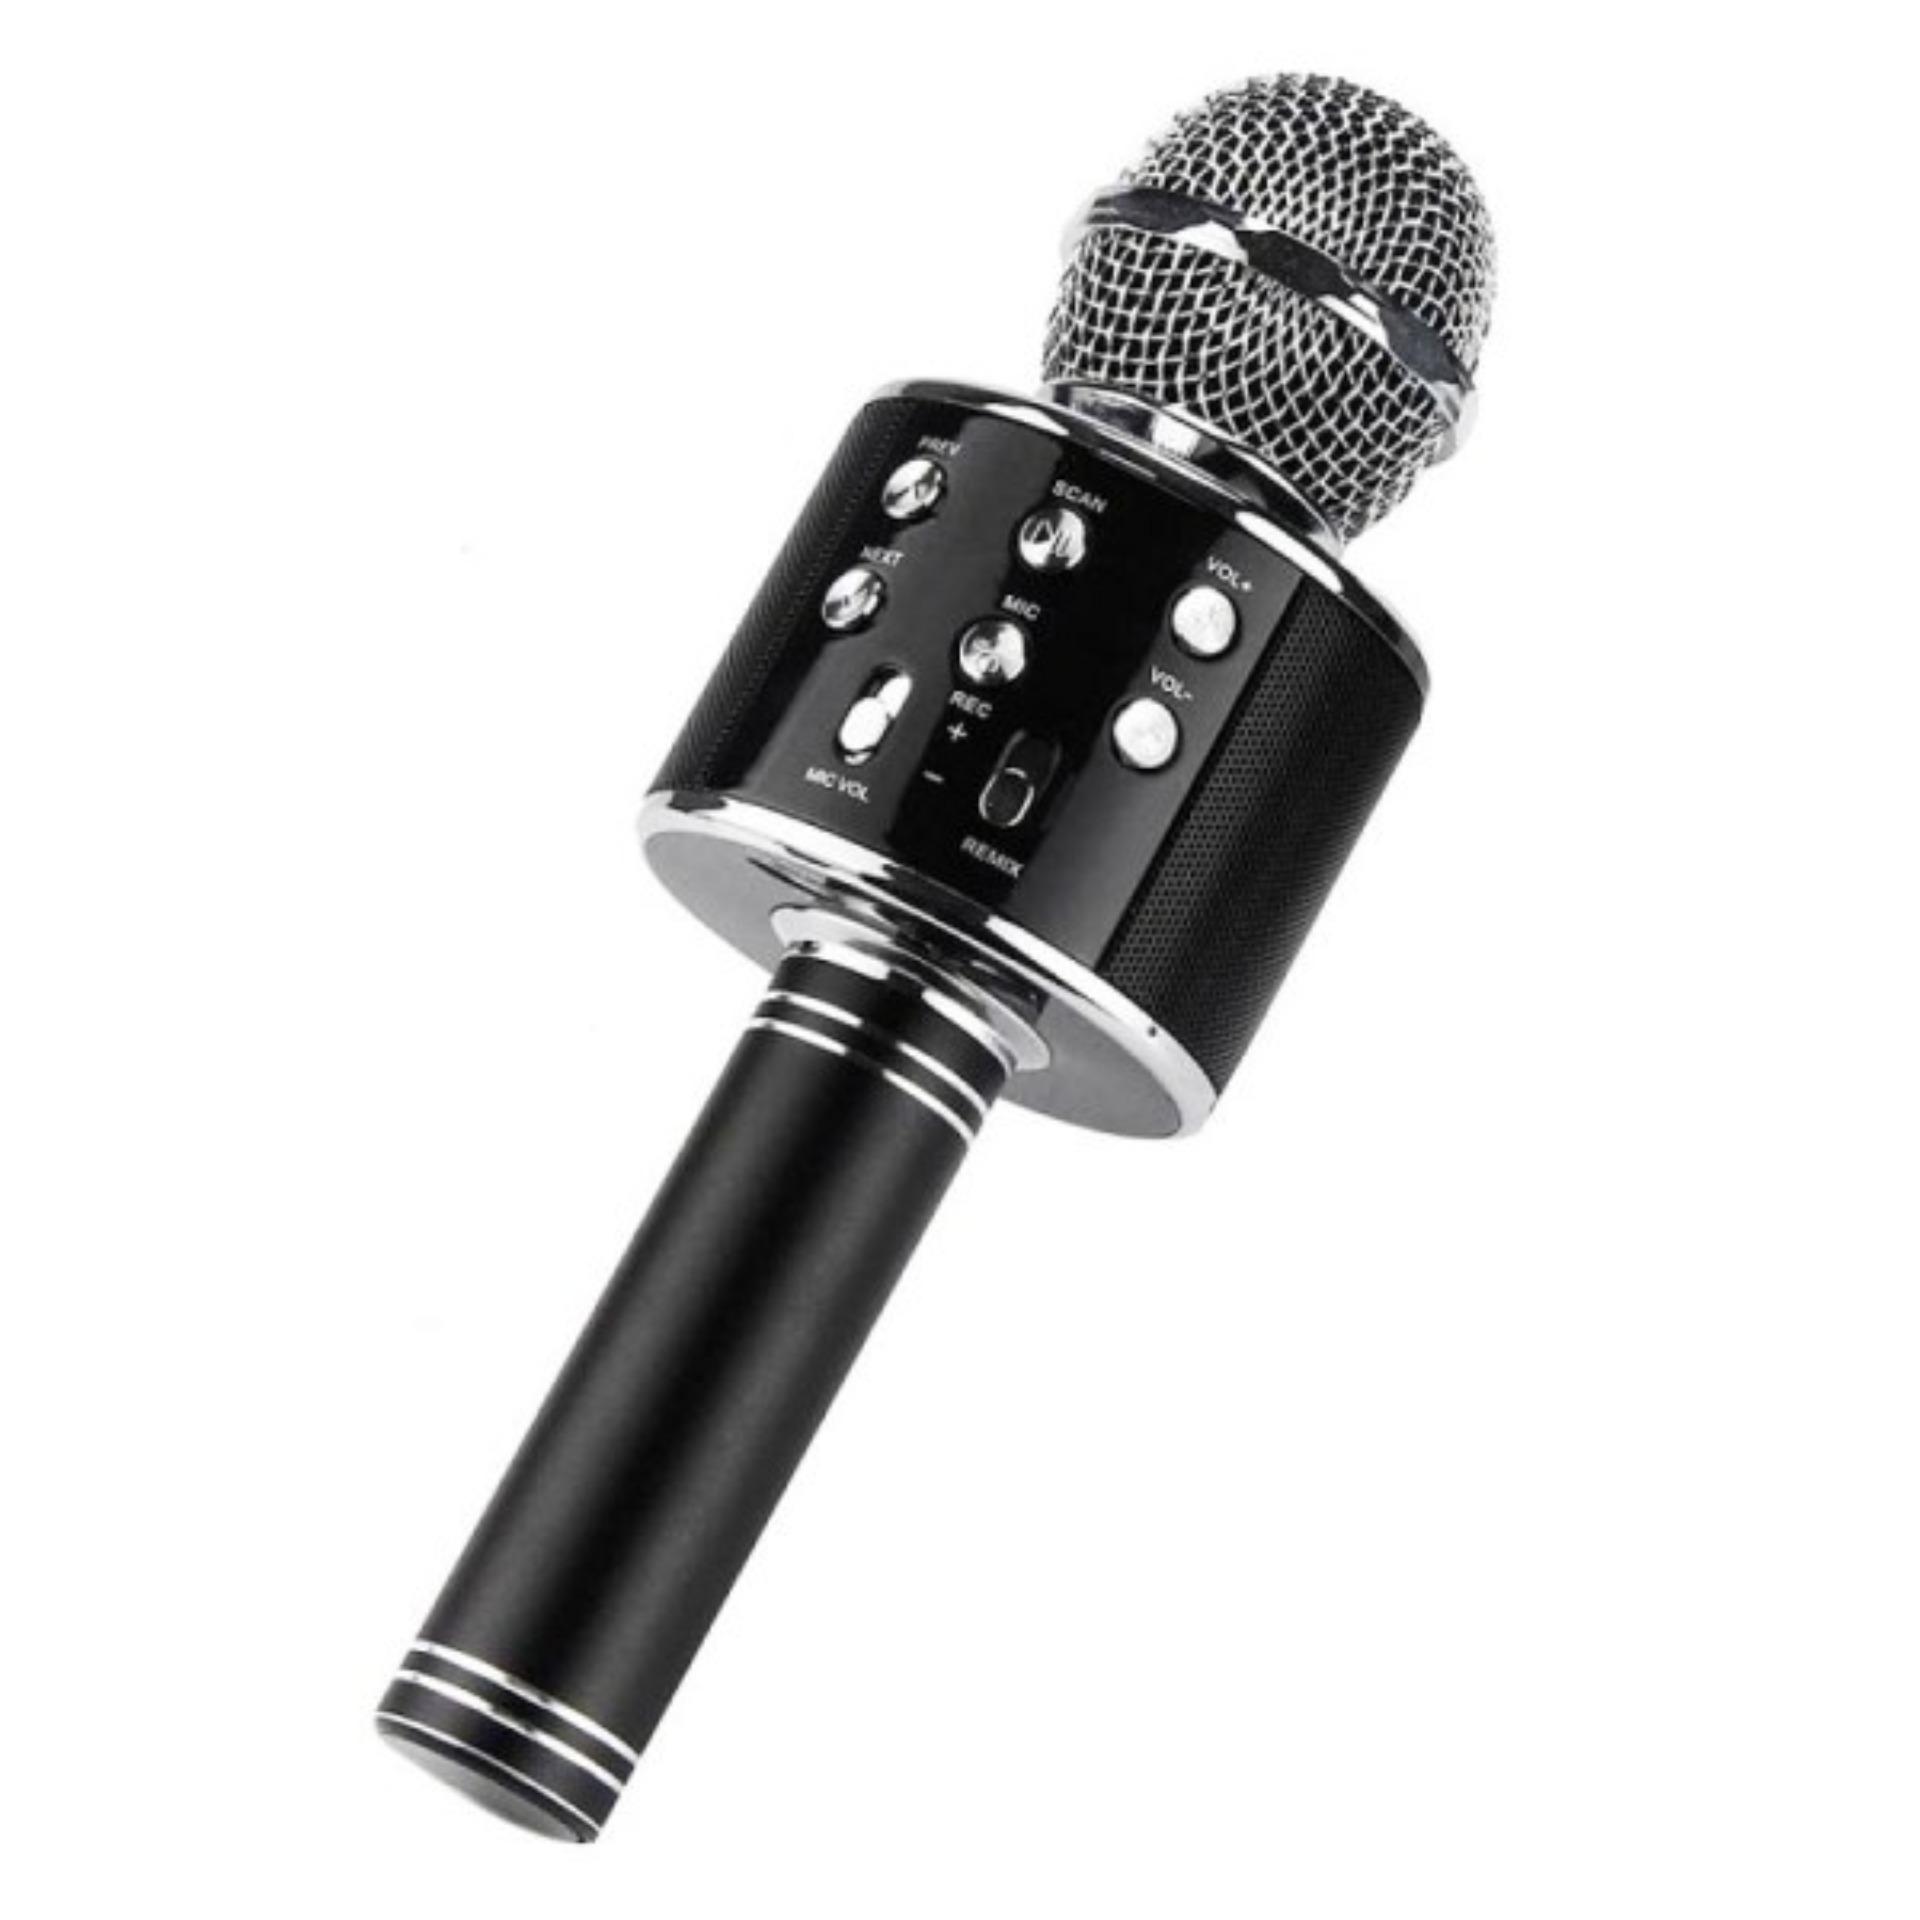 MIC Smule Karaoke Portable WS-858 Bluetooth Wireless Microphone Speaker USB